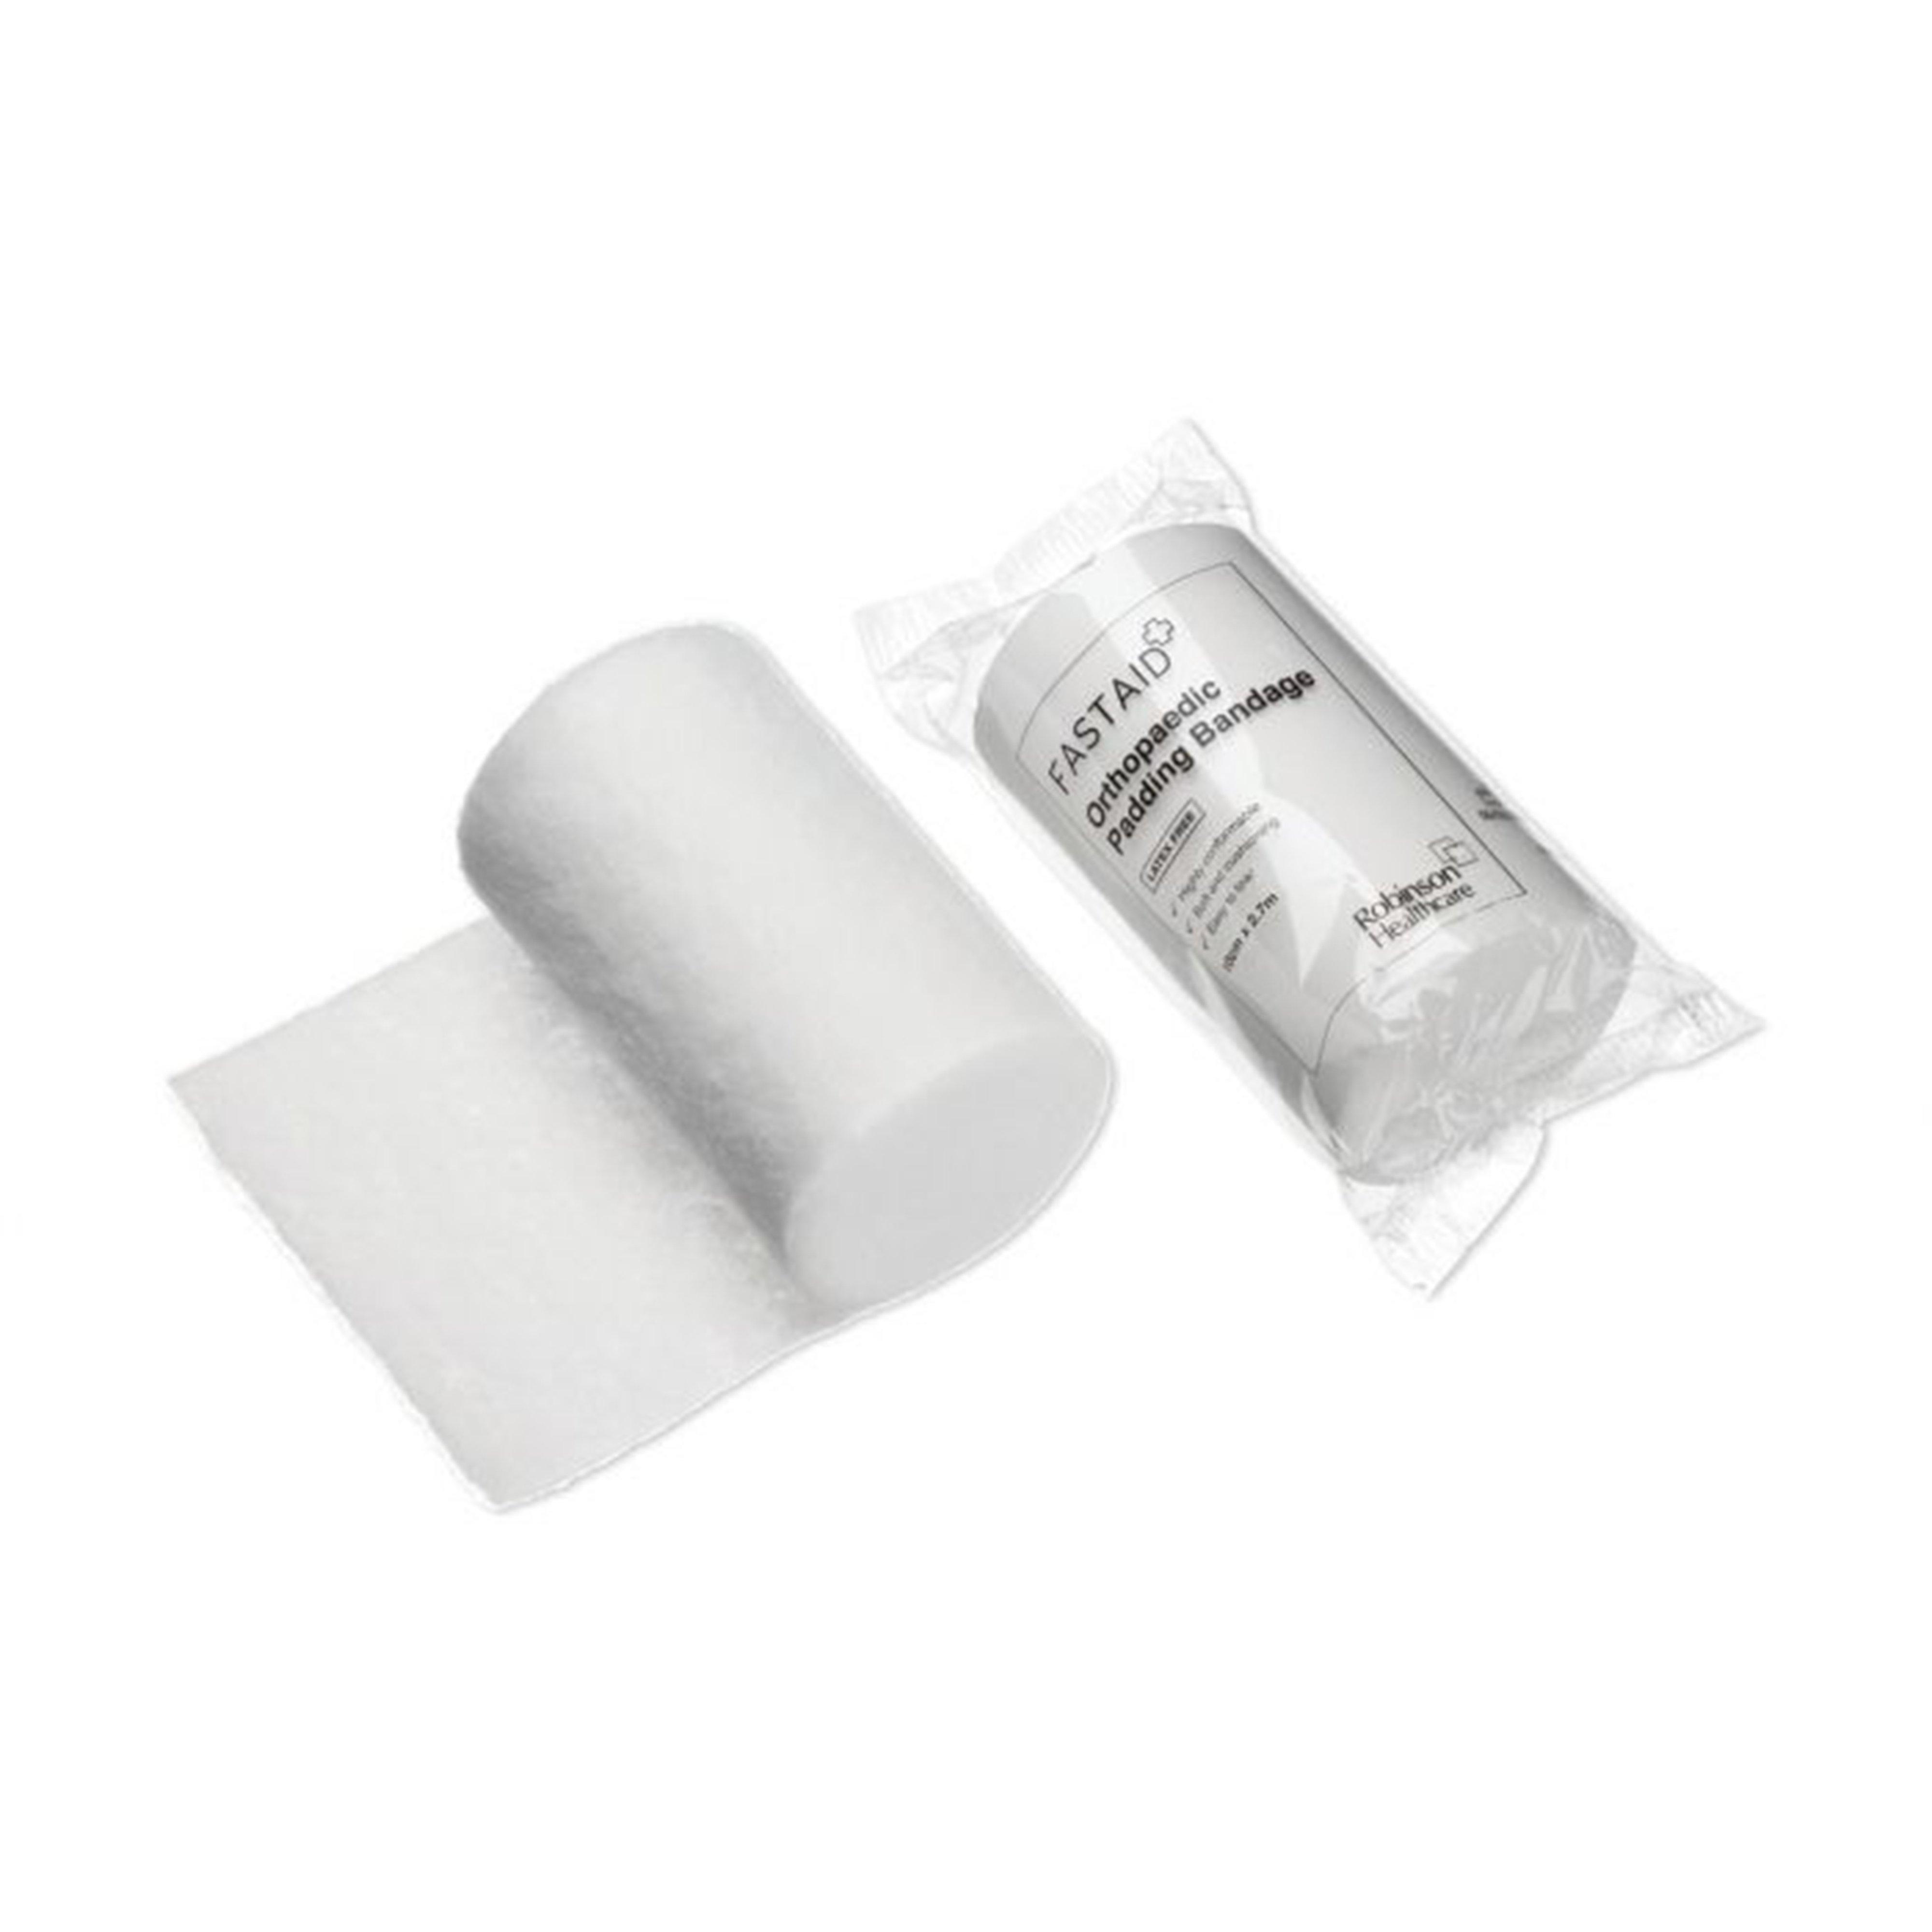 Healthcare Orthopaedic Padding Bandage White